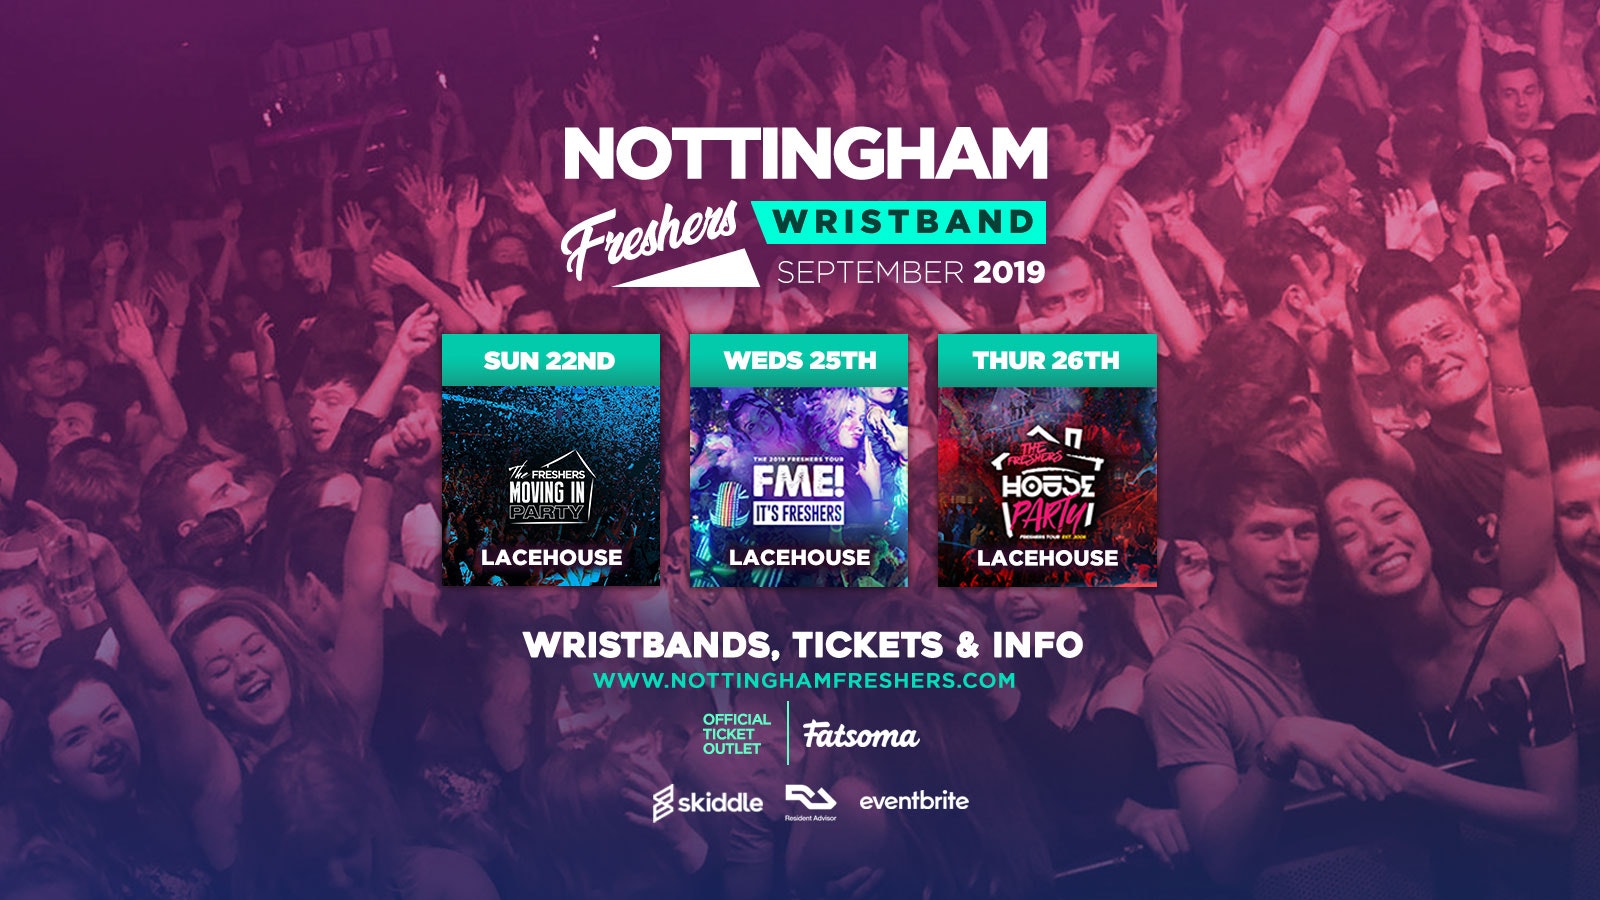 Nottingham Freshers Wristband 2019 ///